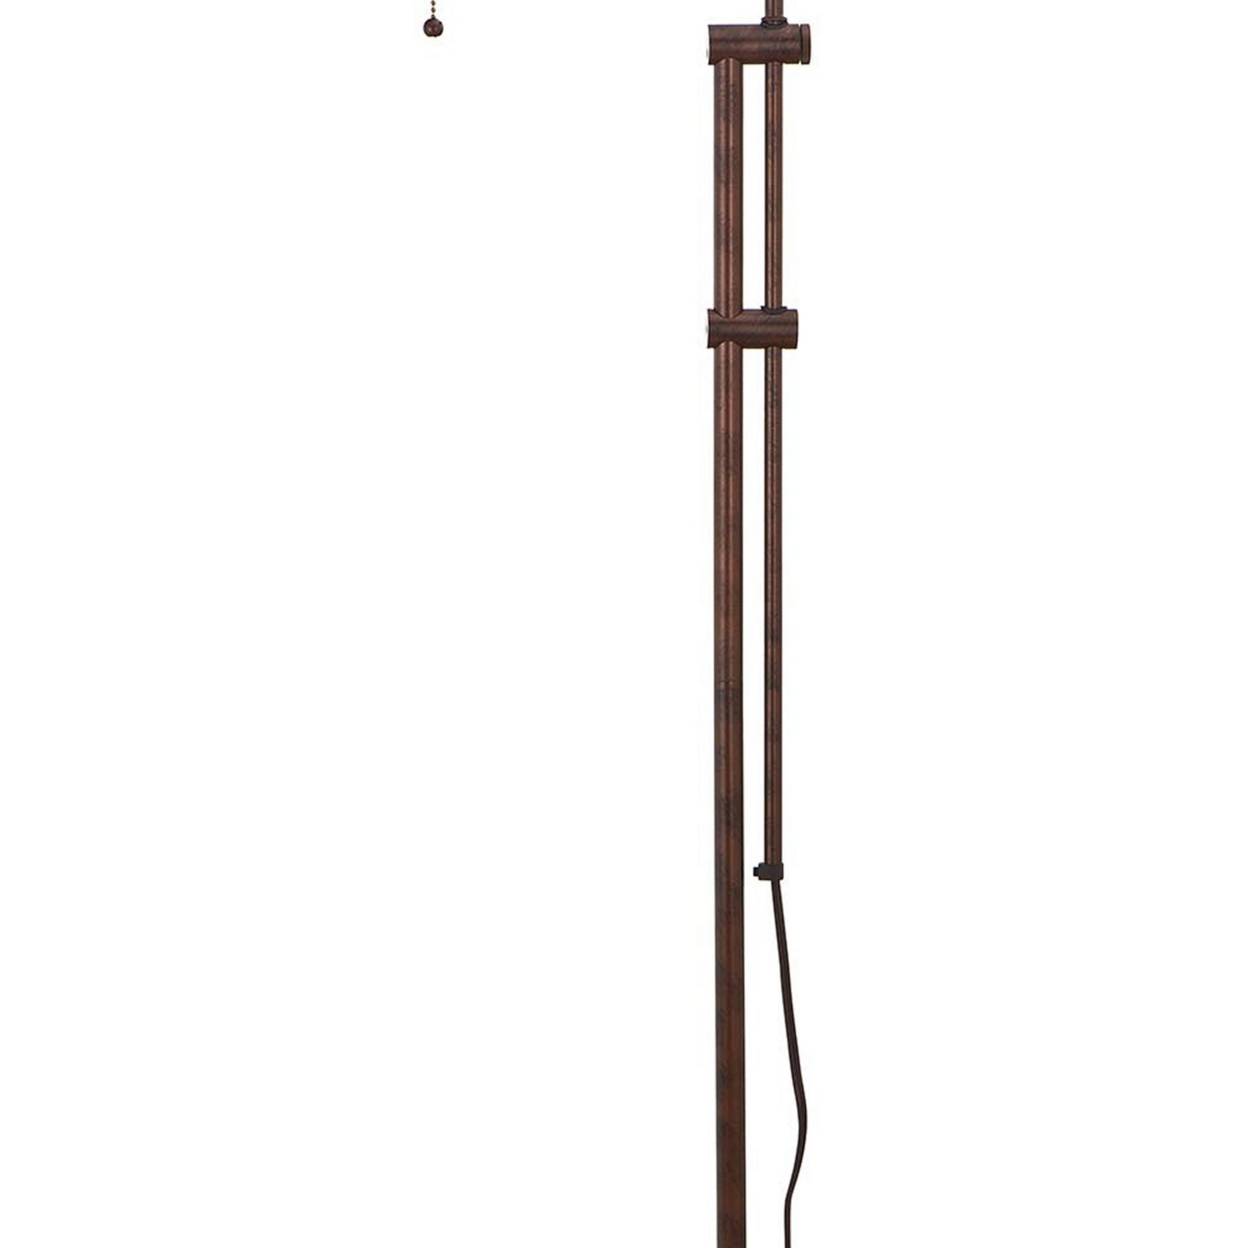 Metal Rectangular Floor Lamp With Adjustable Pole, Bronze- Saltoro Sherpi